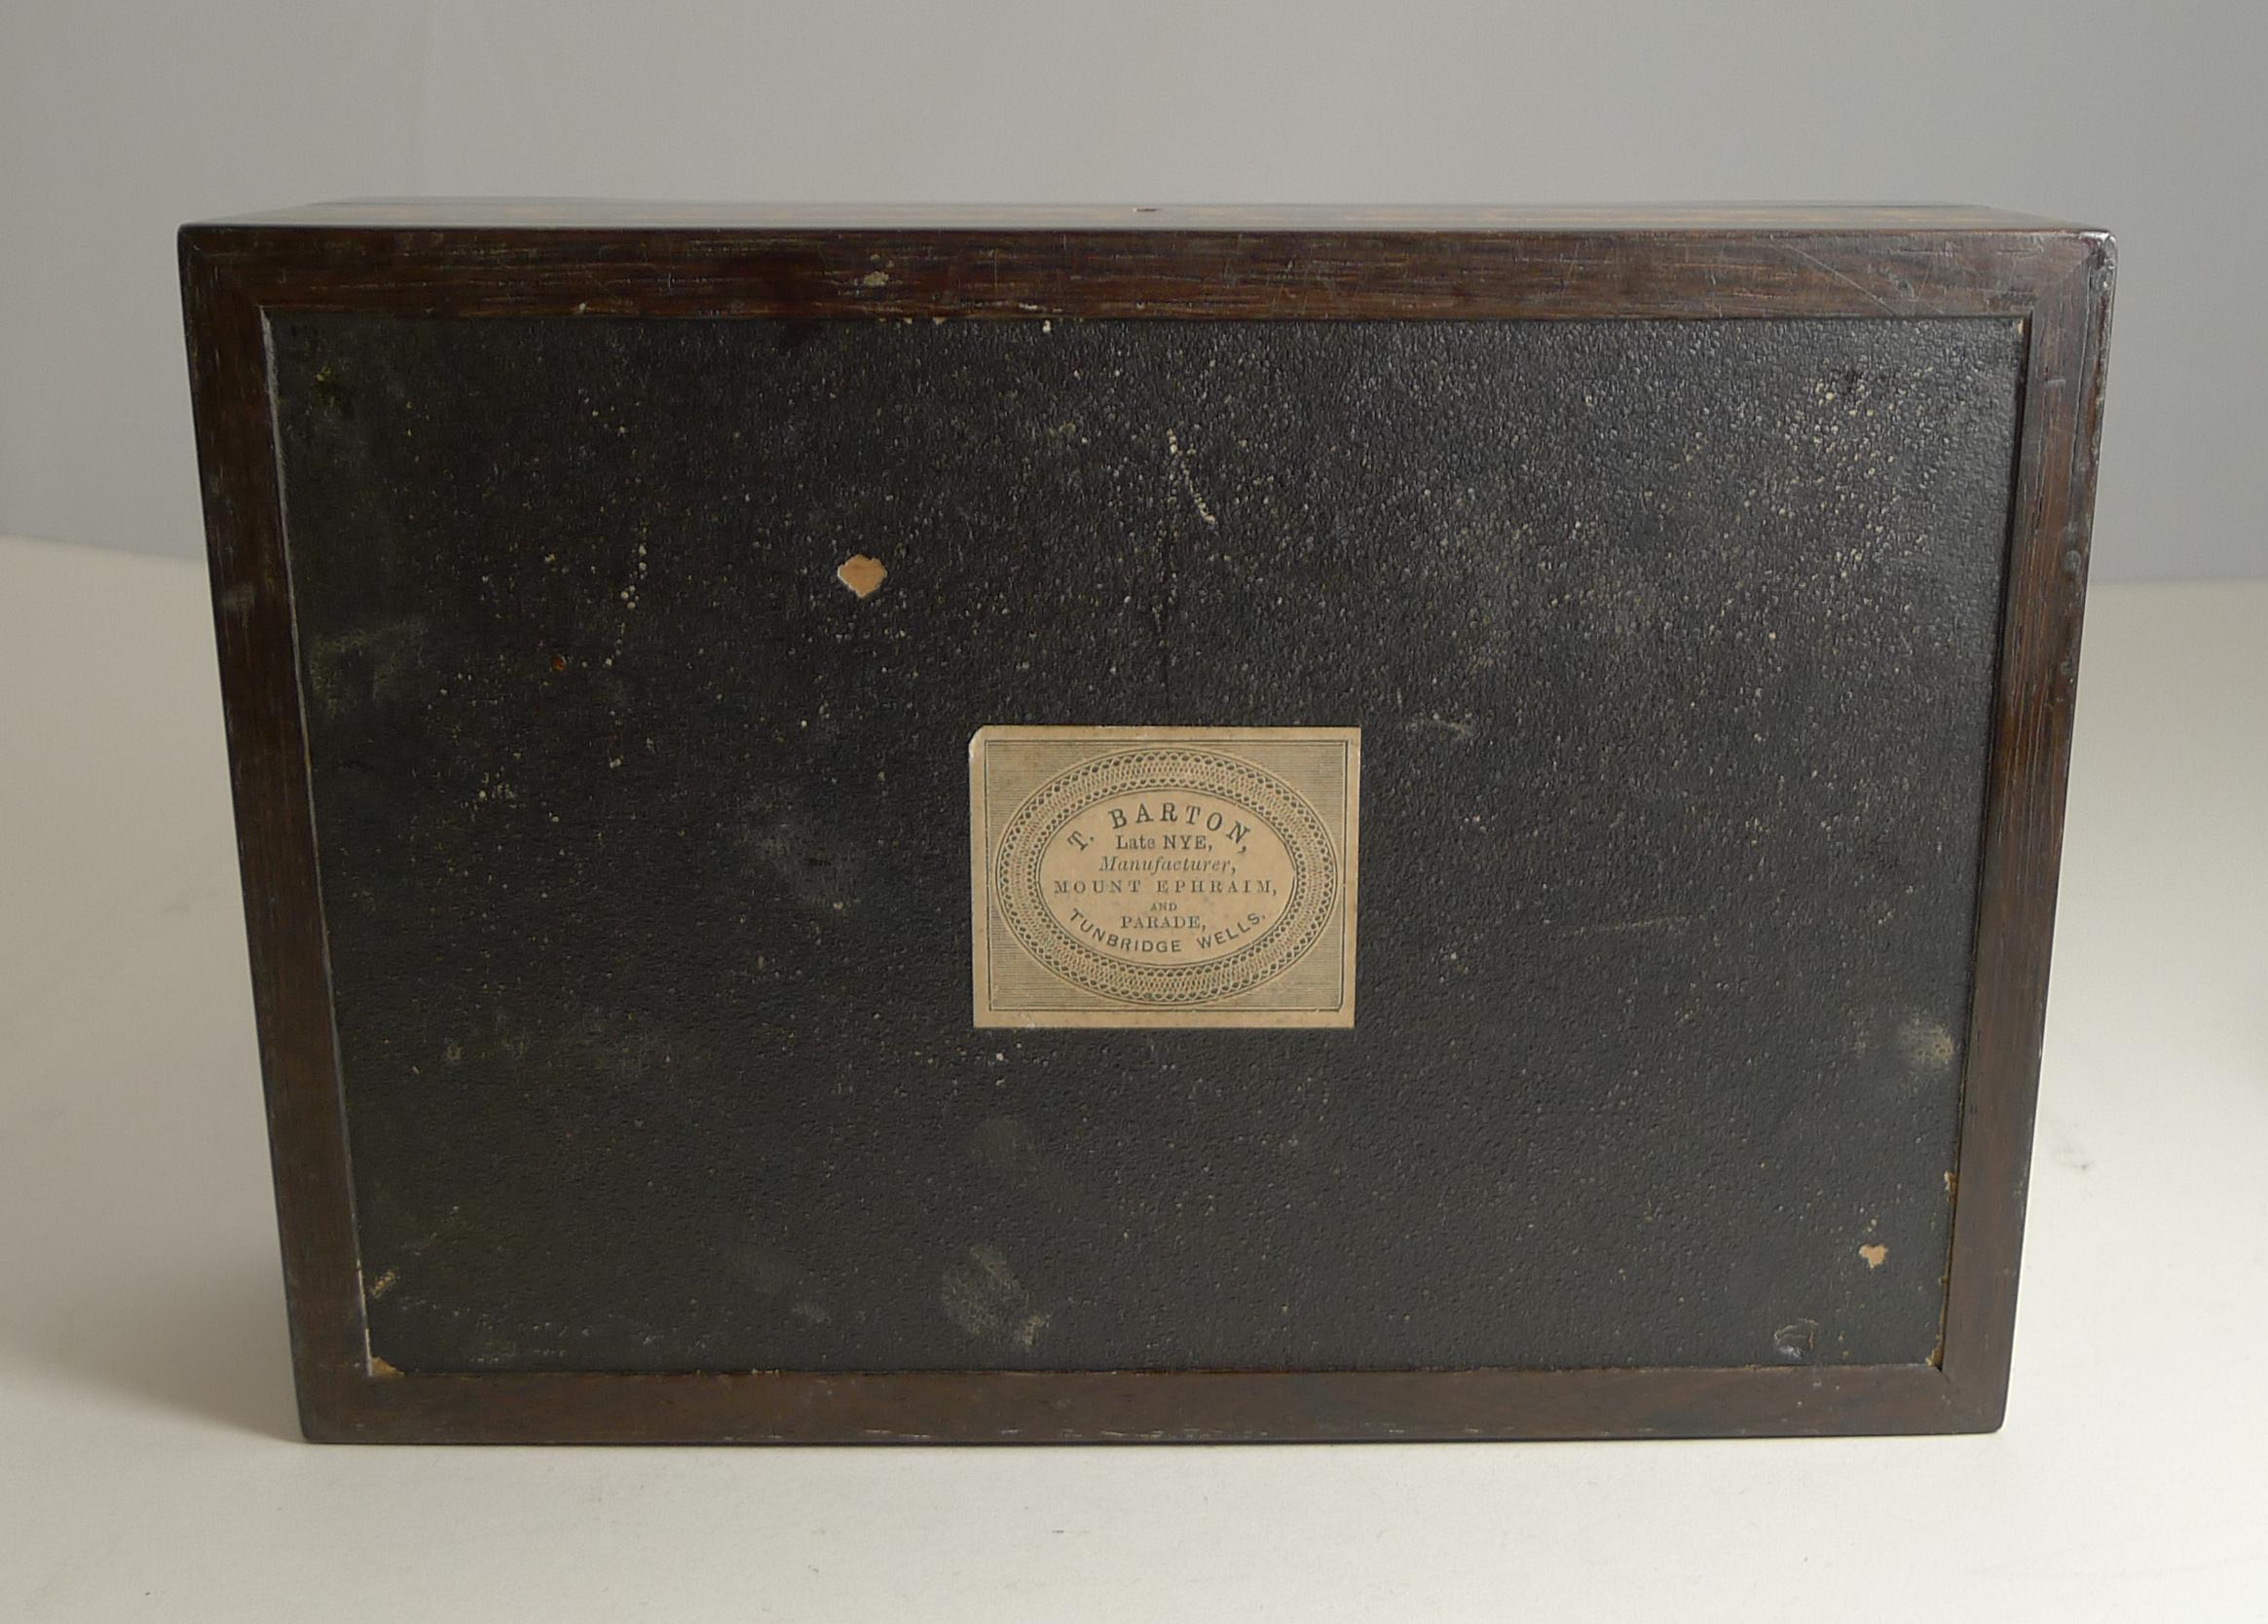 Antique Tunbridge Ware Jewelry Box by T. Barton, Late Nye, circa 1850 In Good Condition In Bath, GB